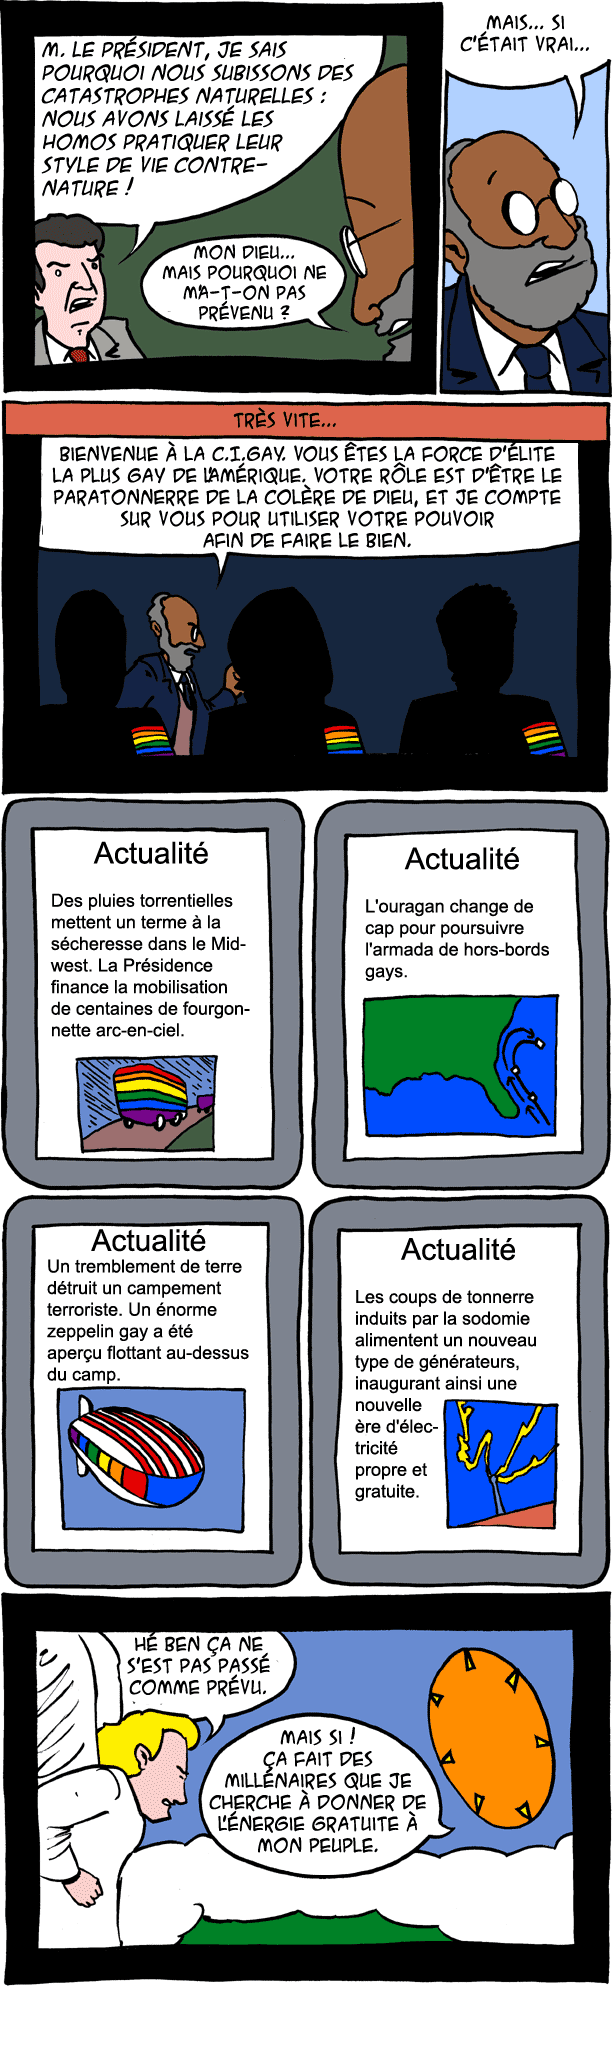 la C.I.Gay